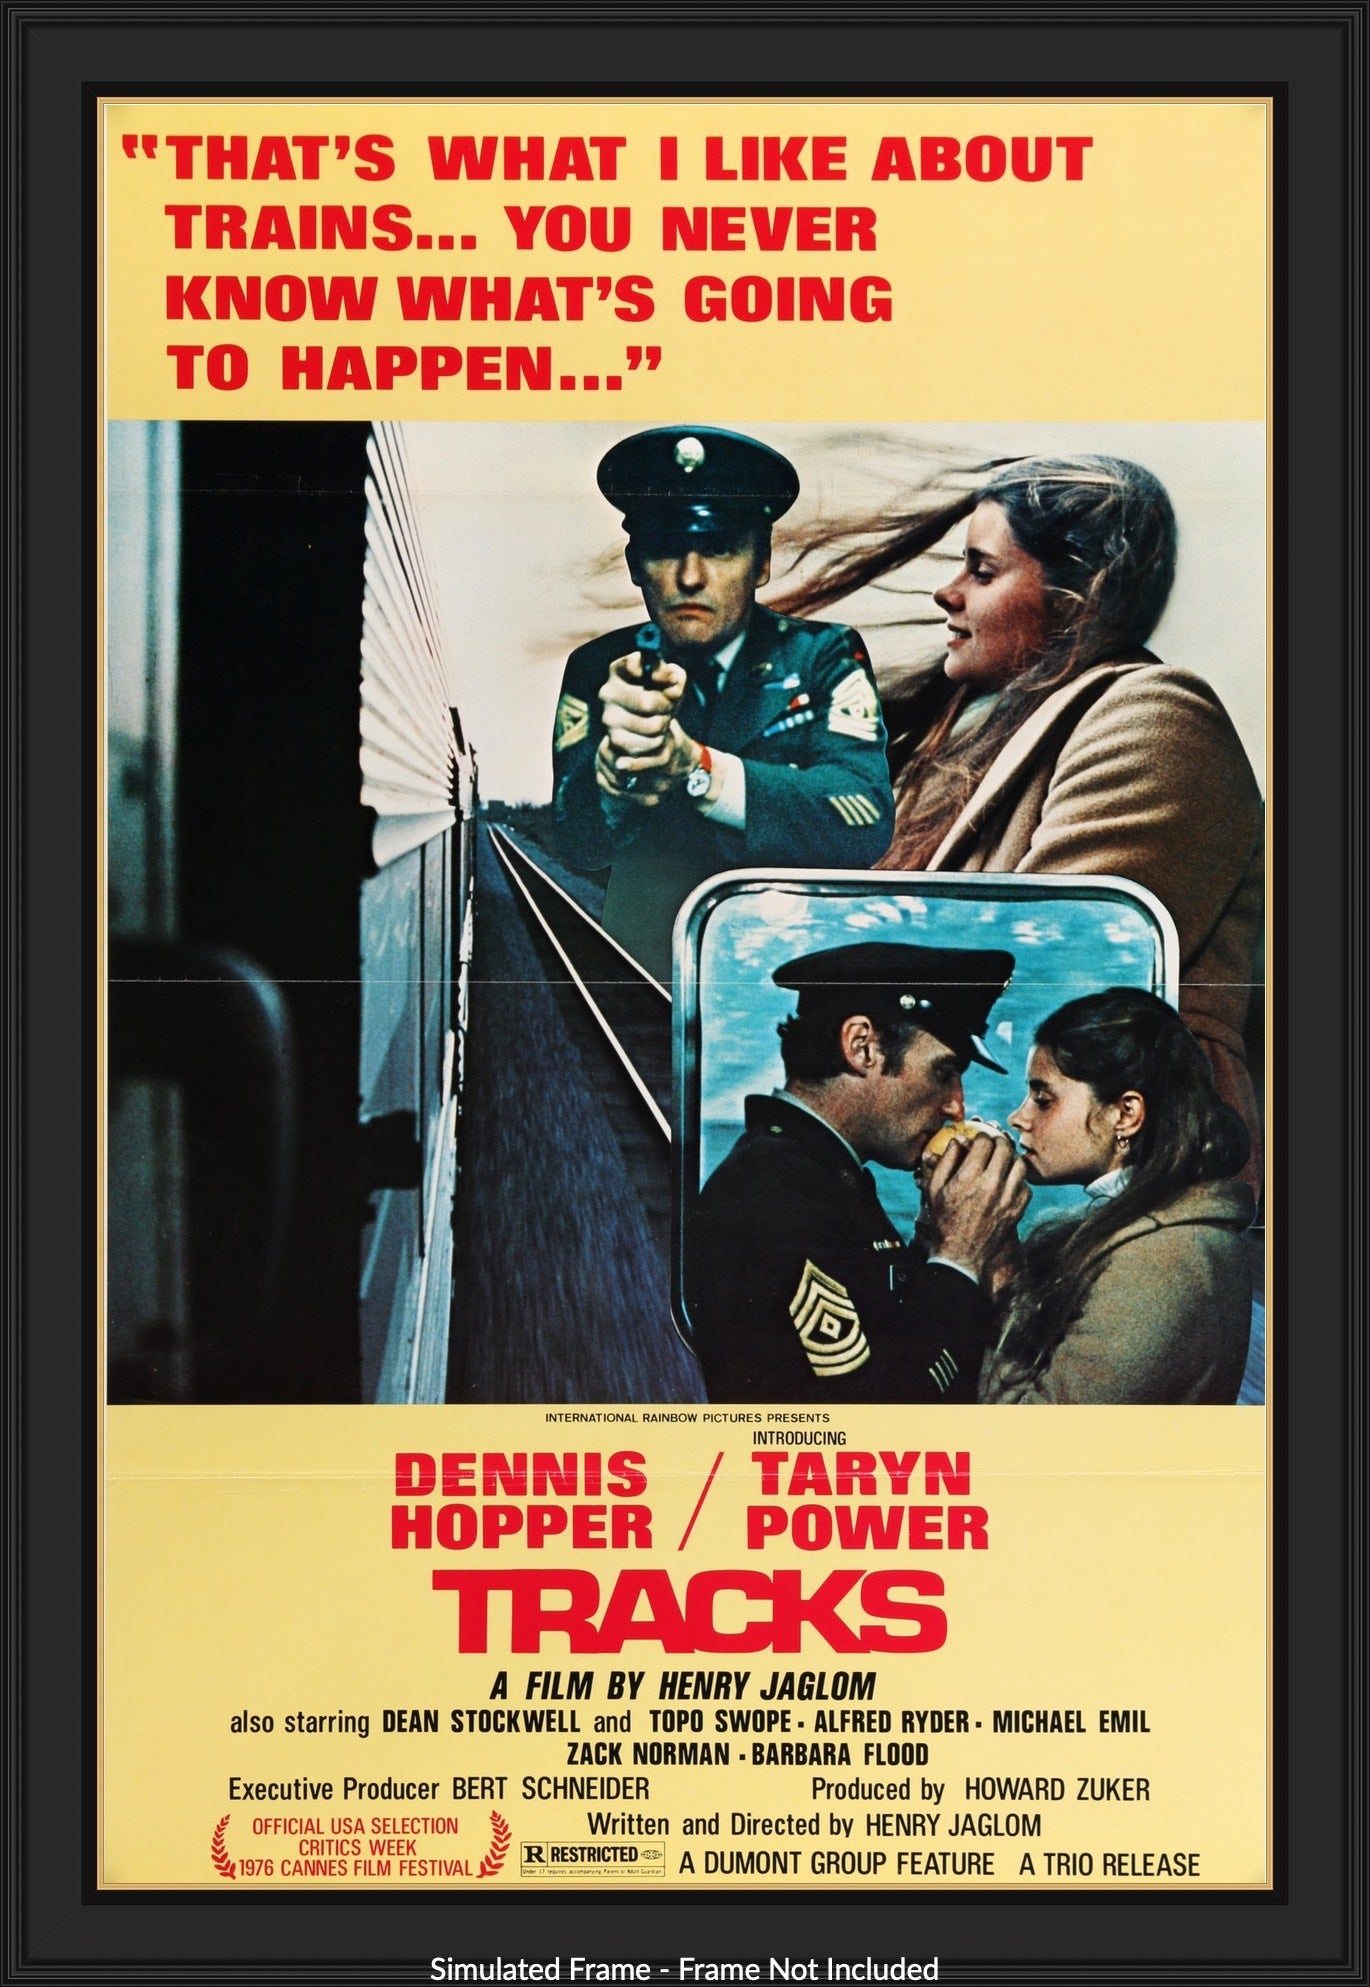 Tracks (1976) original movie poster for sale at Original Film Art